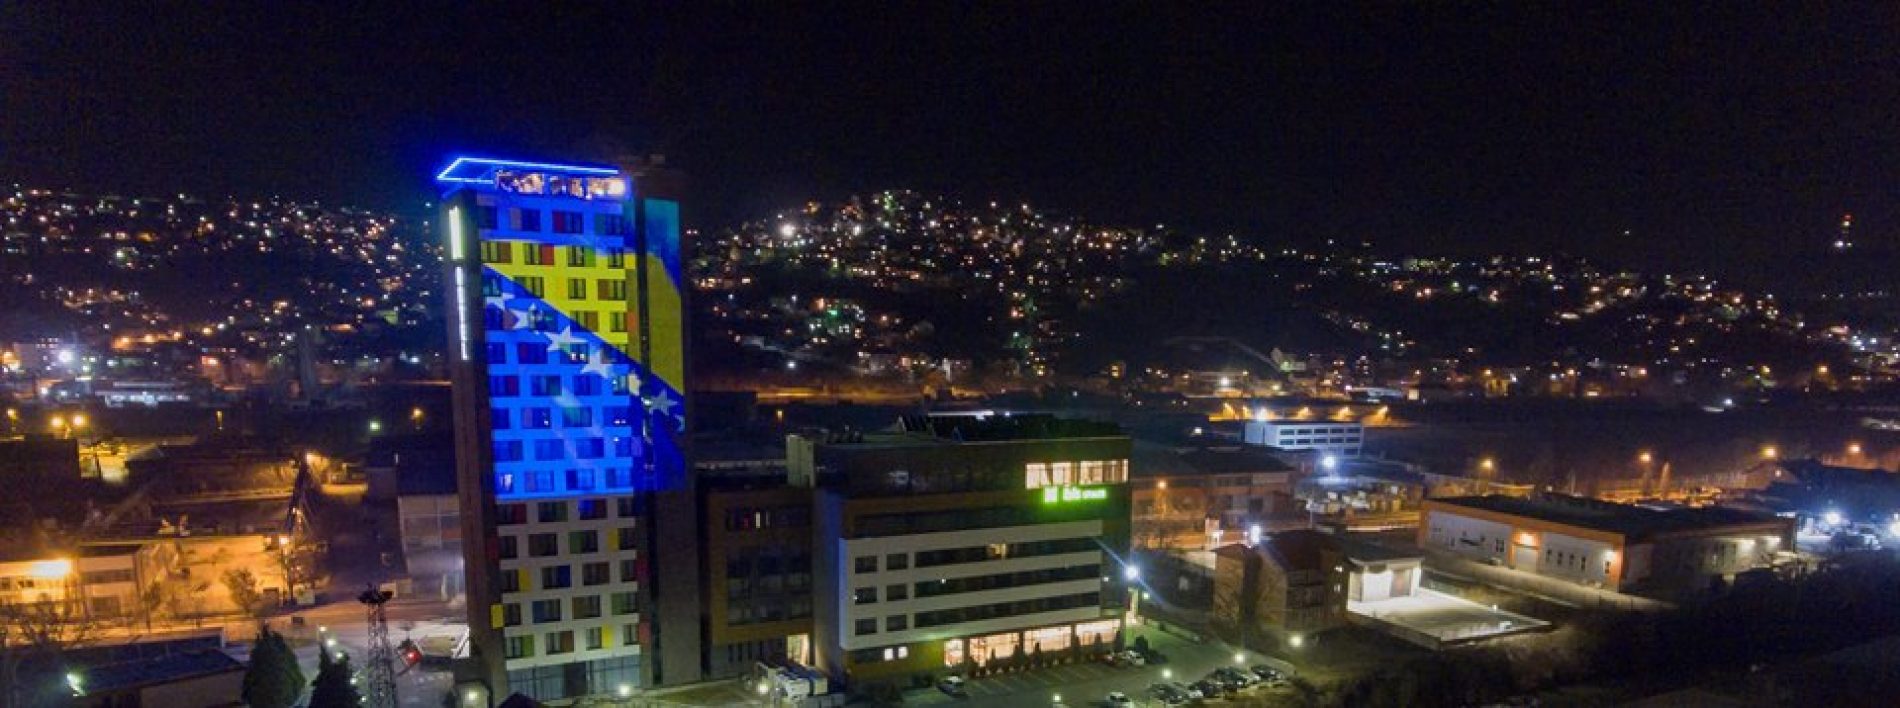 Završena izgradnja i adaptacija hotela Ibis Styles Sarajevo